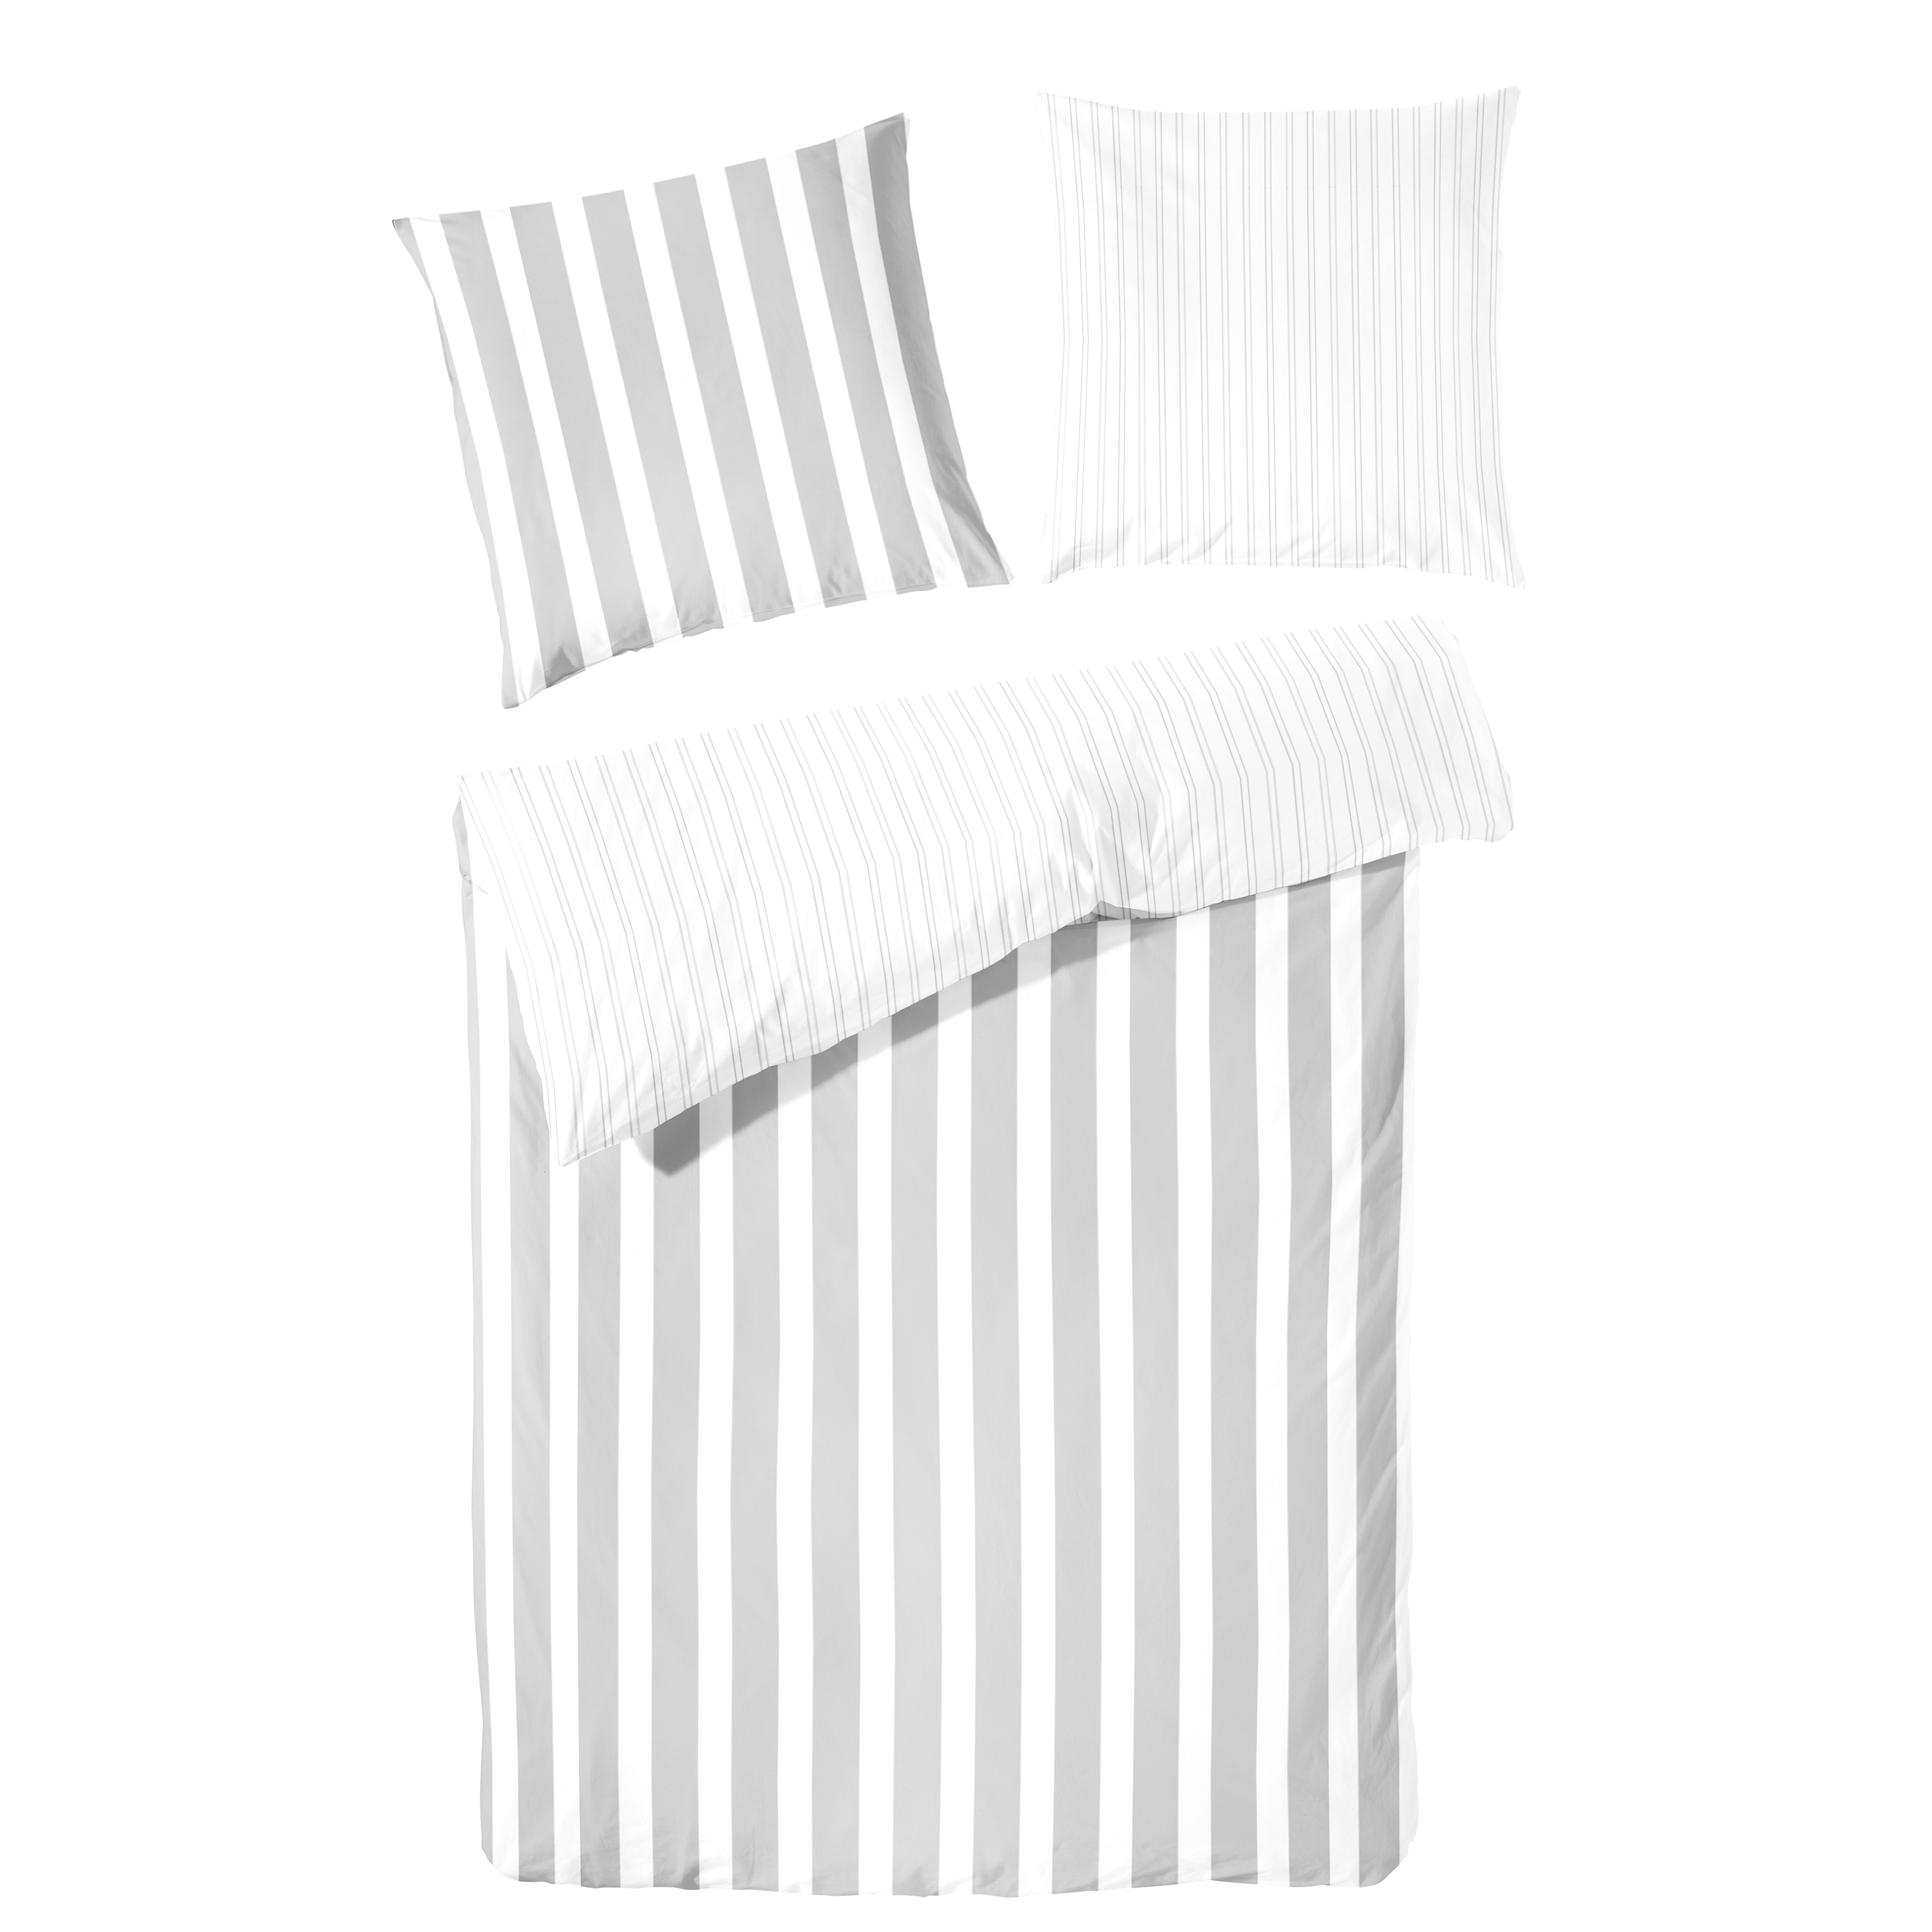 Traumhaft gut schlafen – Perkal-Bettwäsche, 2-teilig, mit Blockstreifen, in versch. Farben und Größen